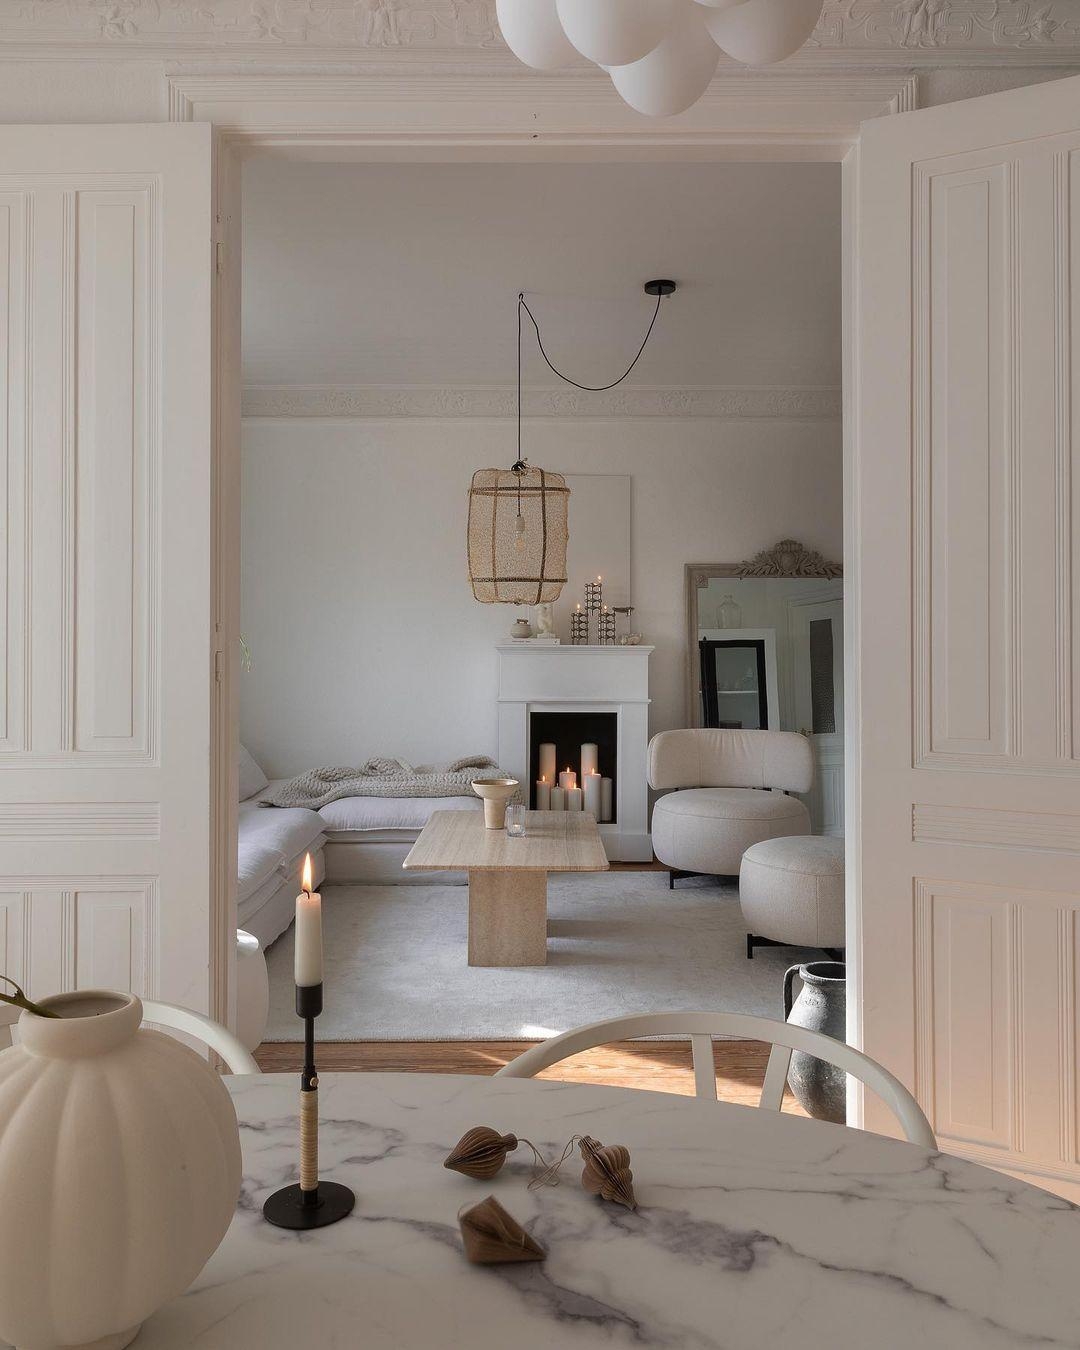 With #doors wide open🚪
#flügeltür #wohnzimmer #einblick #kerzen #kamin #whiteliving #interior #design #couchstyle #cozy